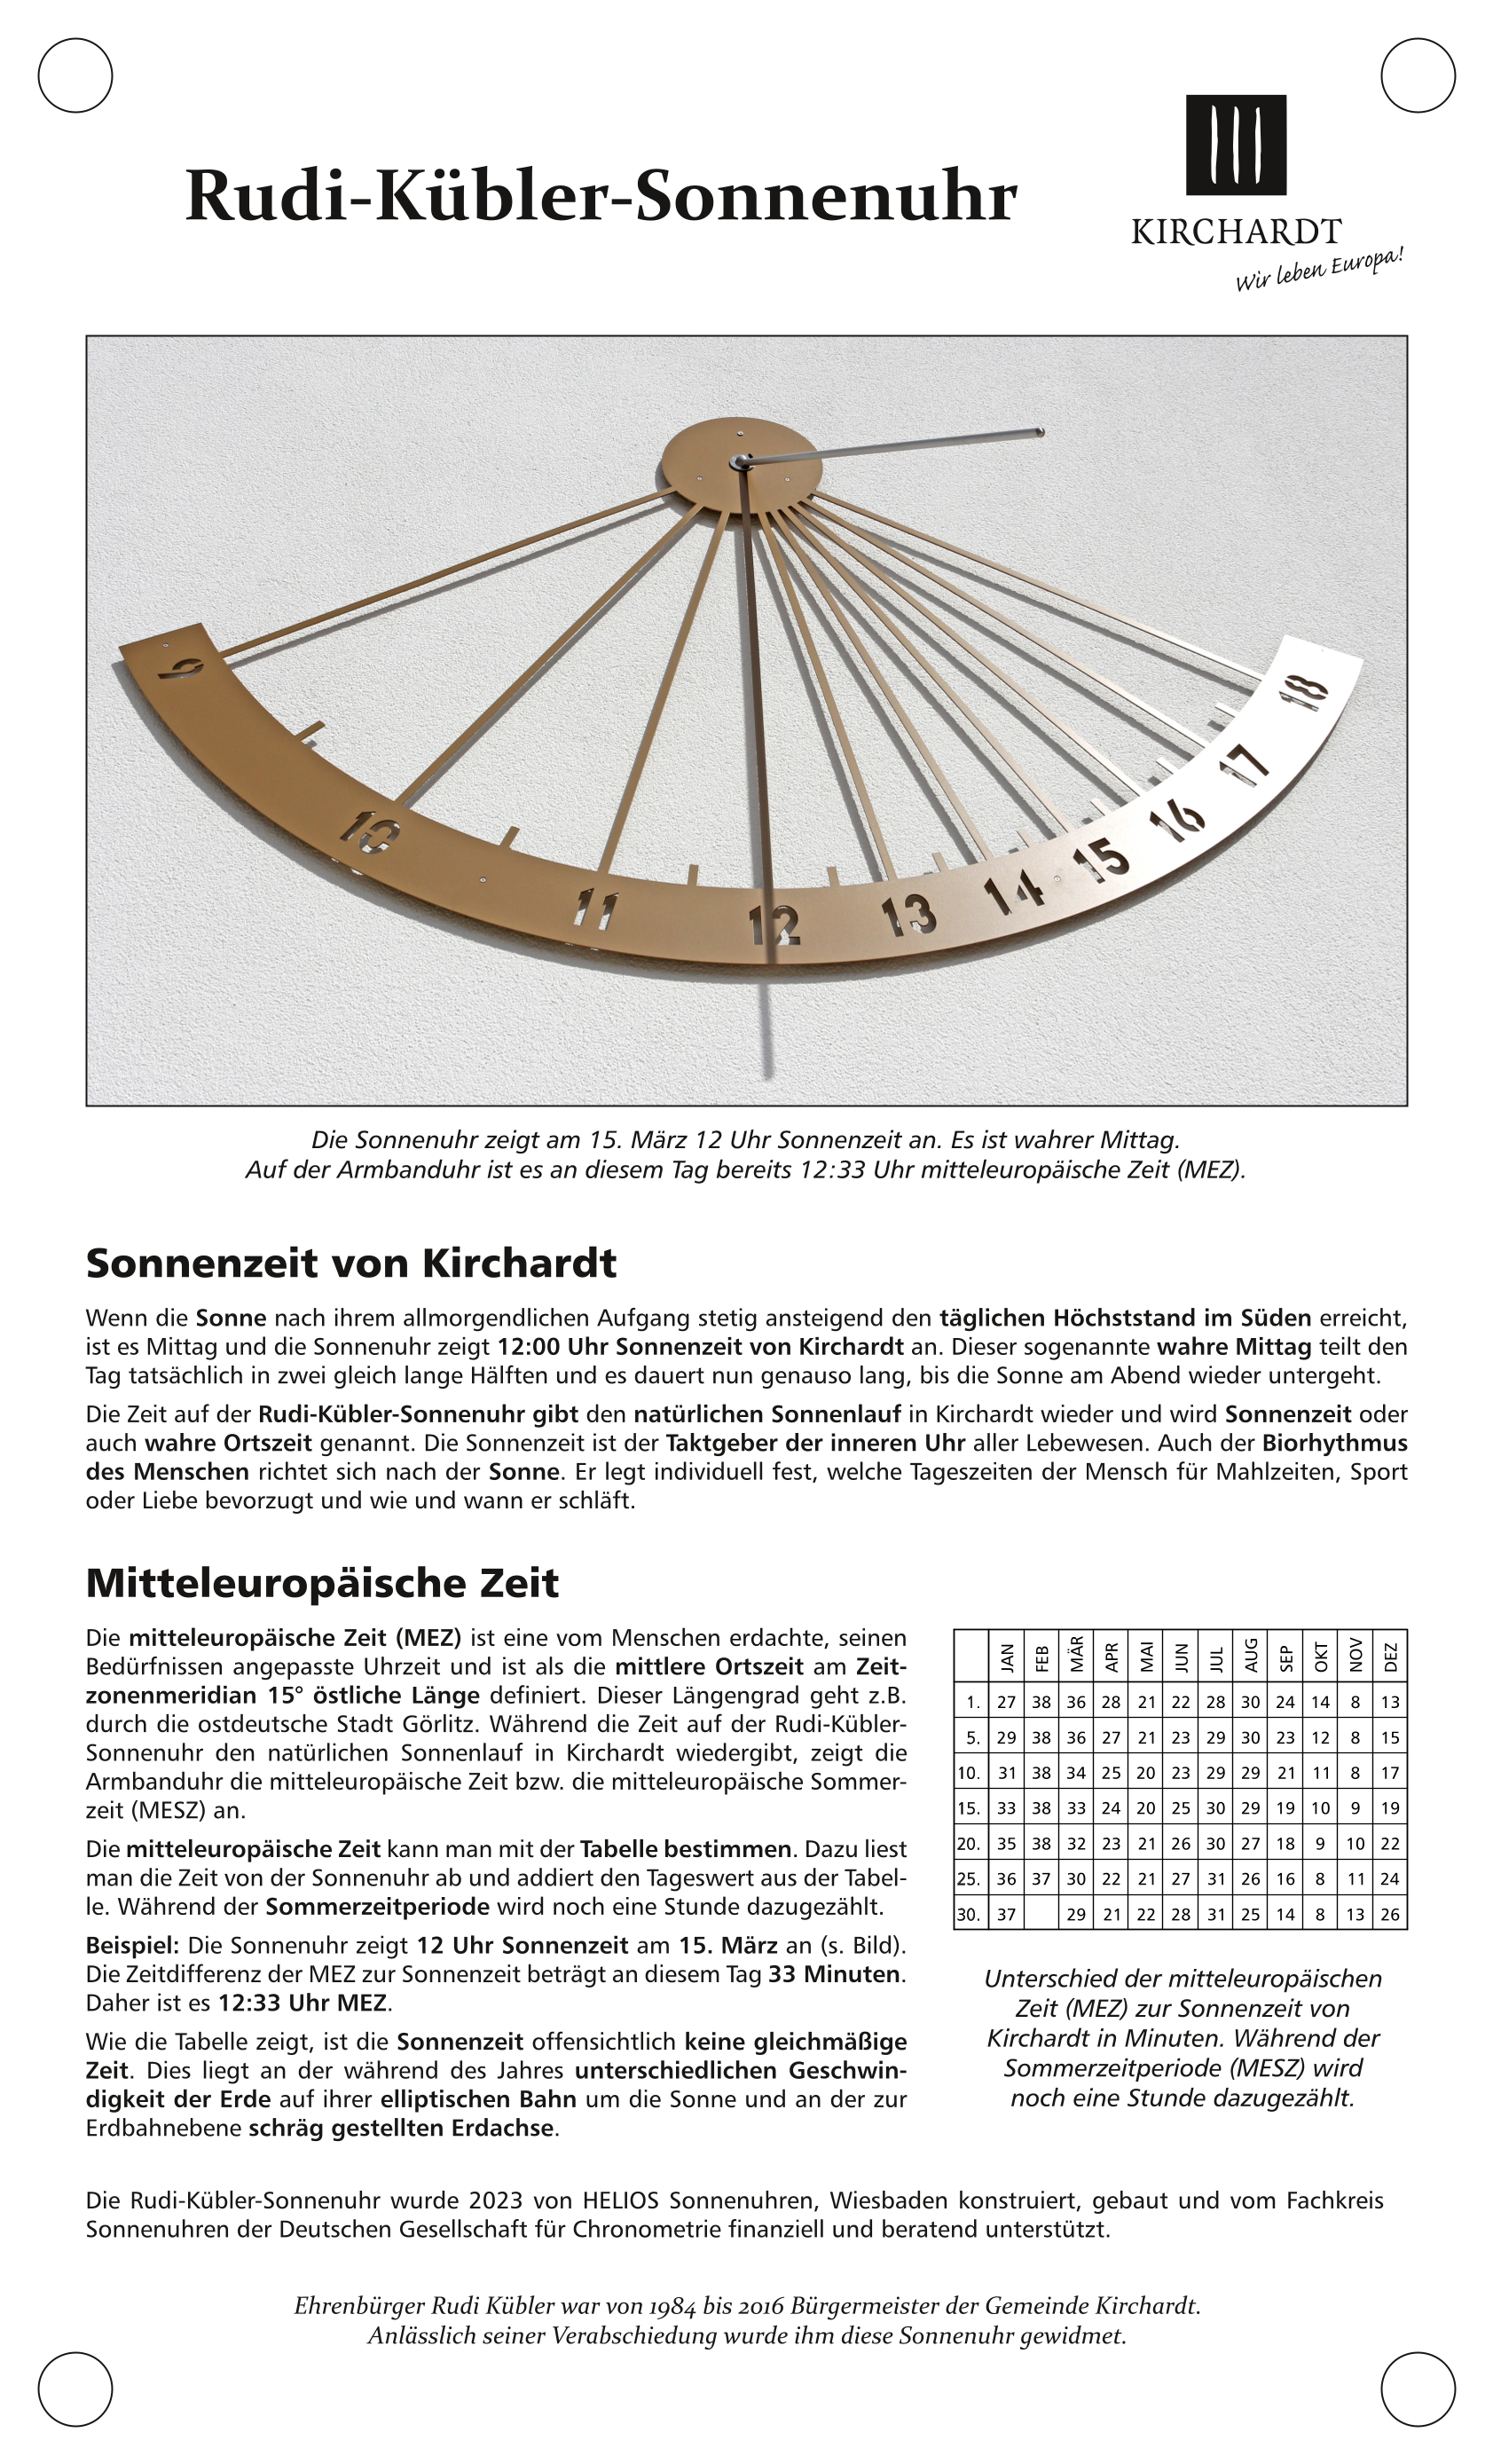  Die Info-Tafel zur Rudi-Kübler-Sonnenuhr beschreibt die Funktion der Sonnenuhr. - Das Bild wird mit Klick vergrößert 